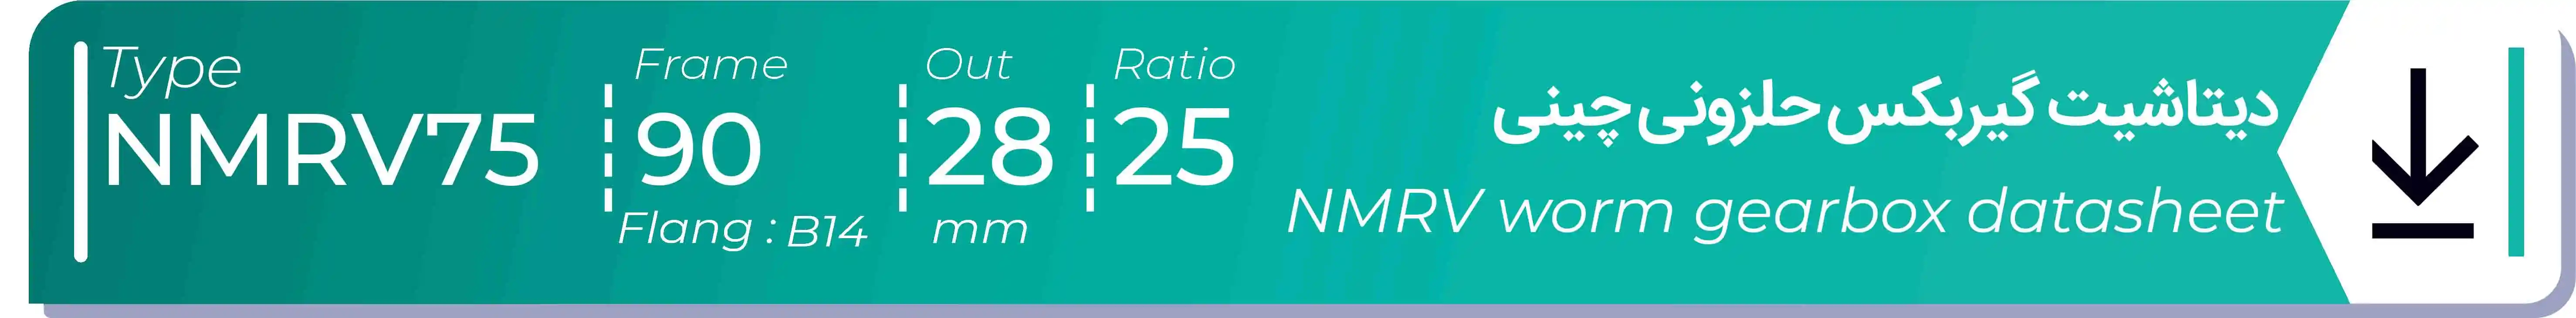  دیتاشیت و مشخصات فنی گیربکس حلزونی چینی   NMRV75  -  با خروجی 28- میلی متر و نسبت25 و فریم 90